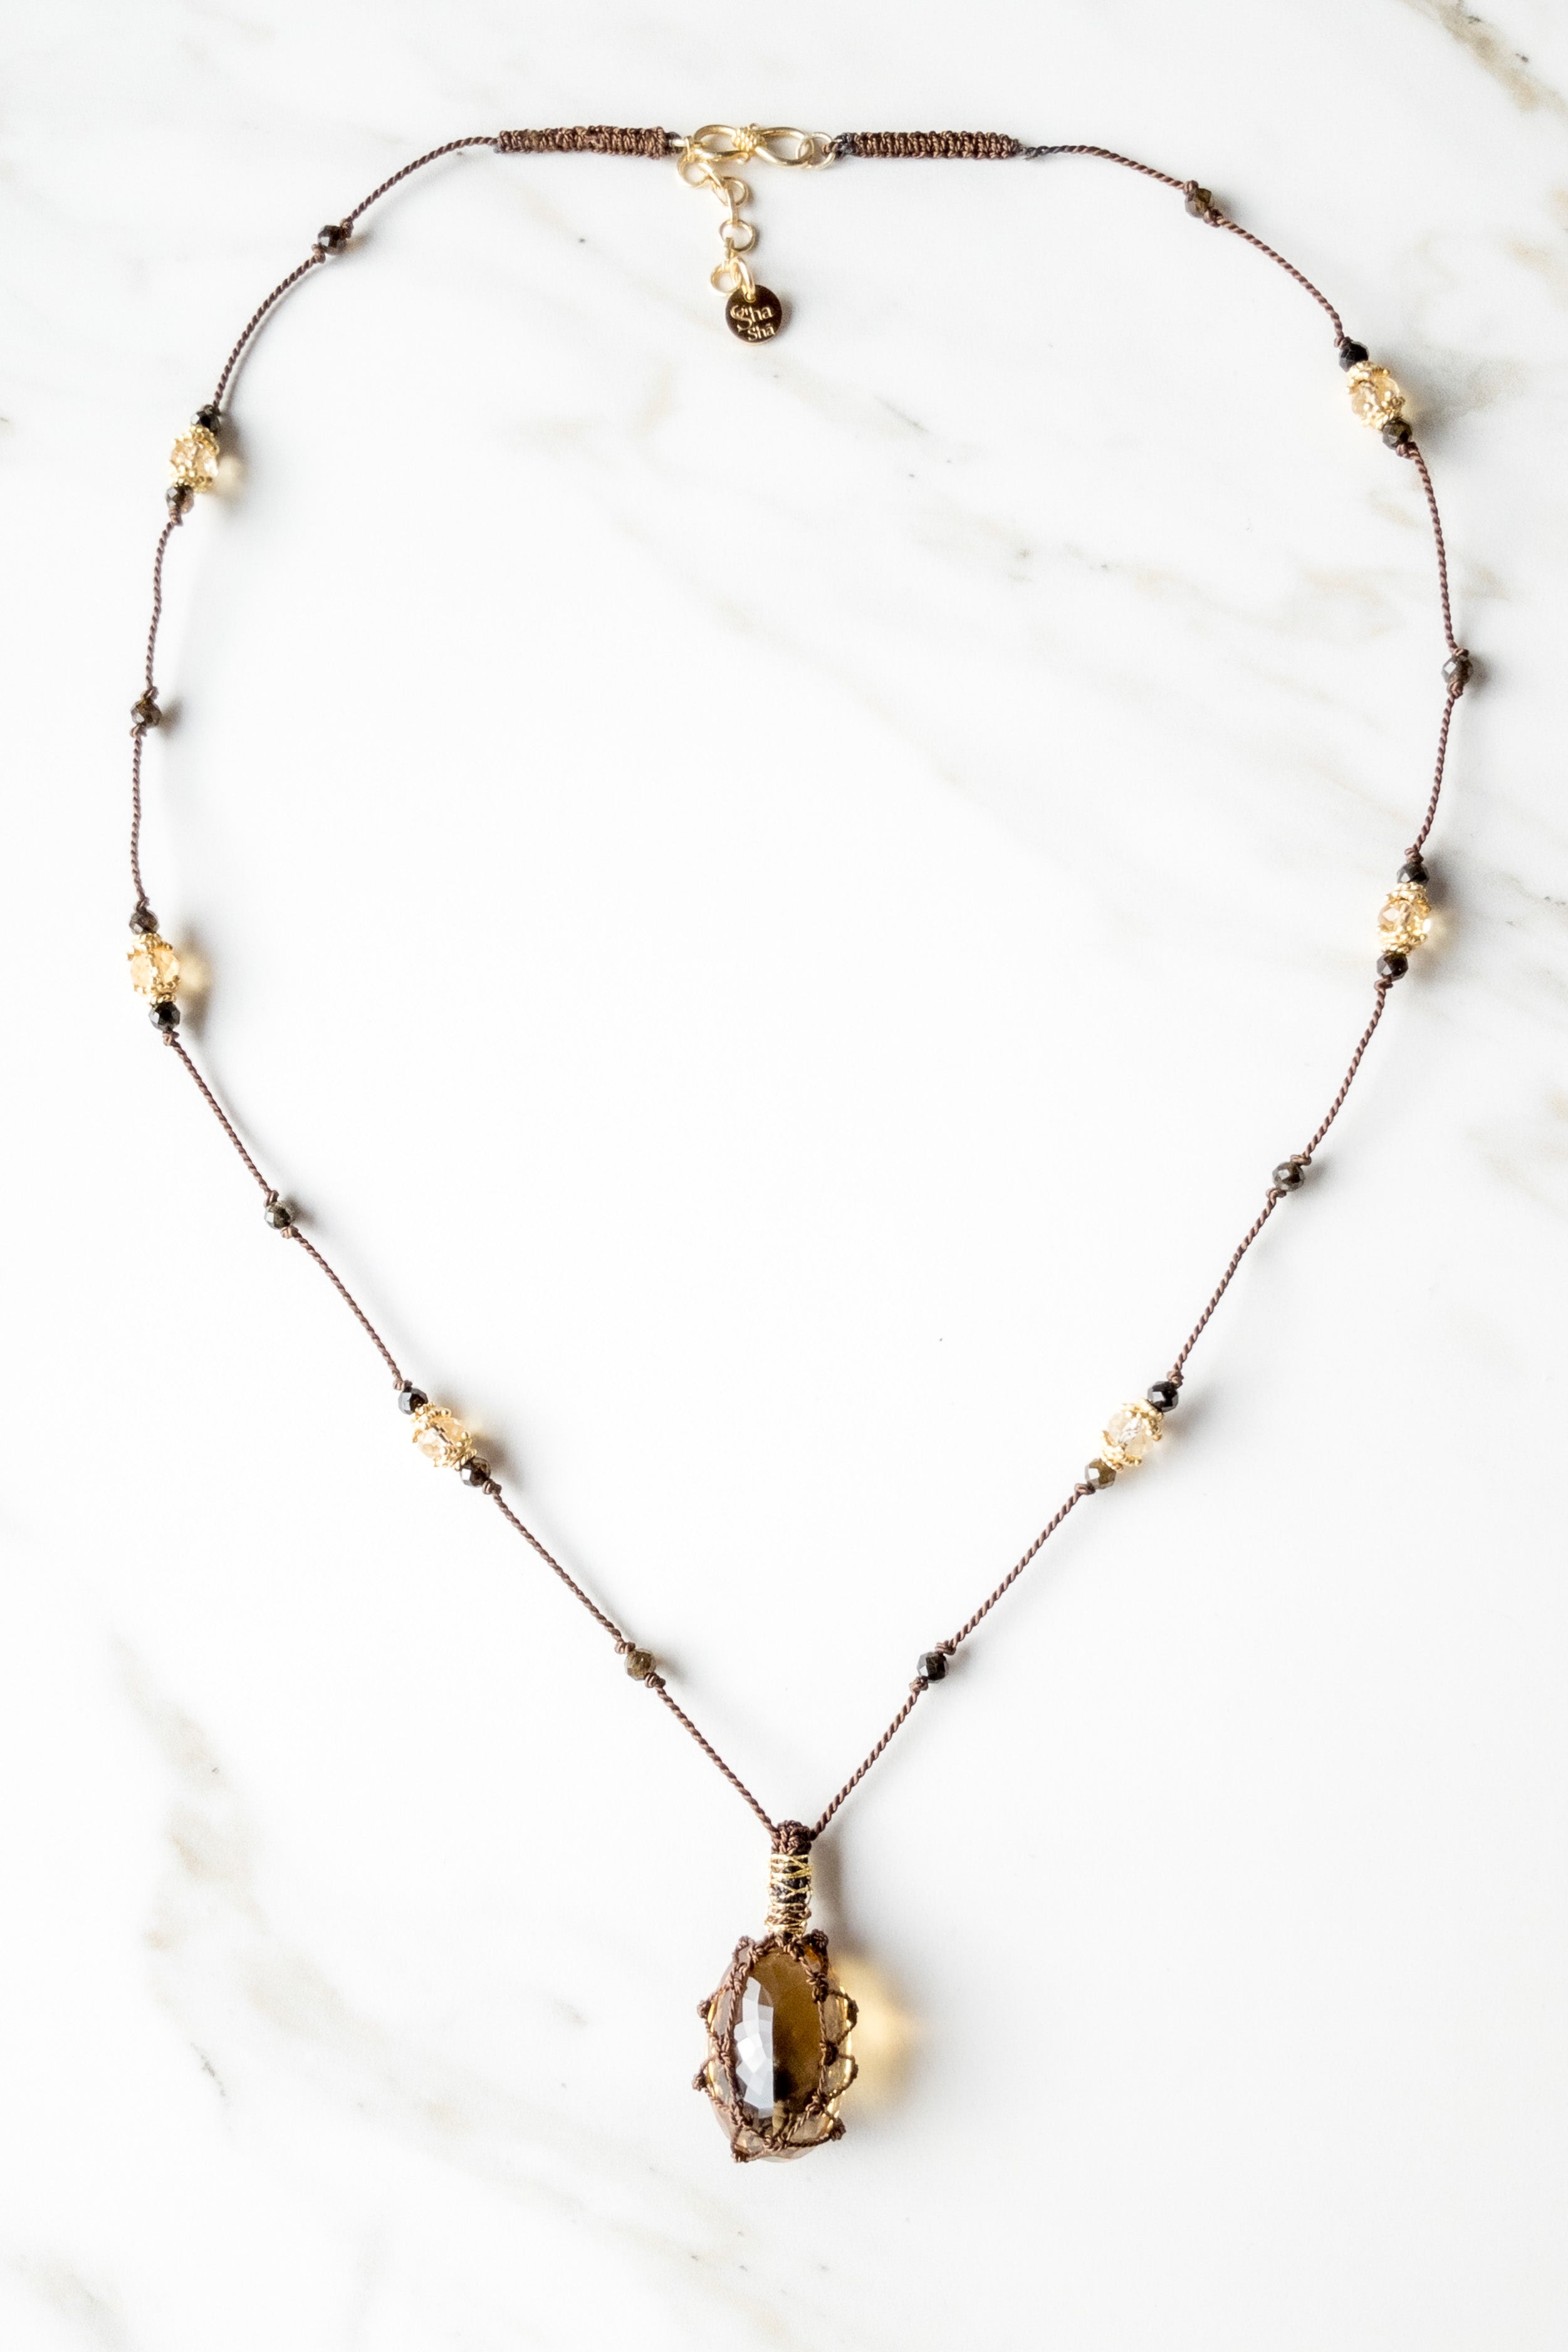 Honey Quartz « Aabha » Necklace - India inspired jewelry - Shasha Switzerland